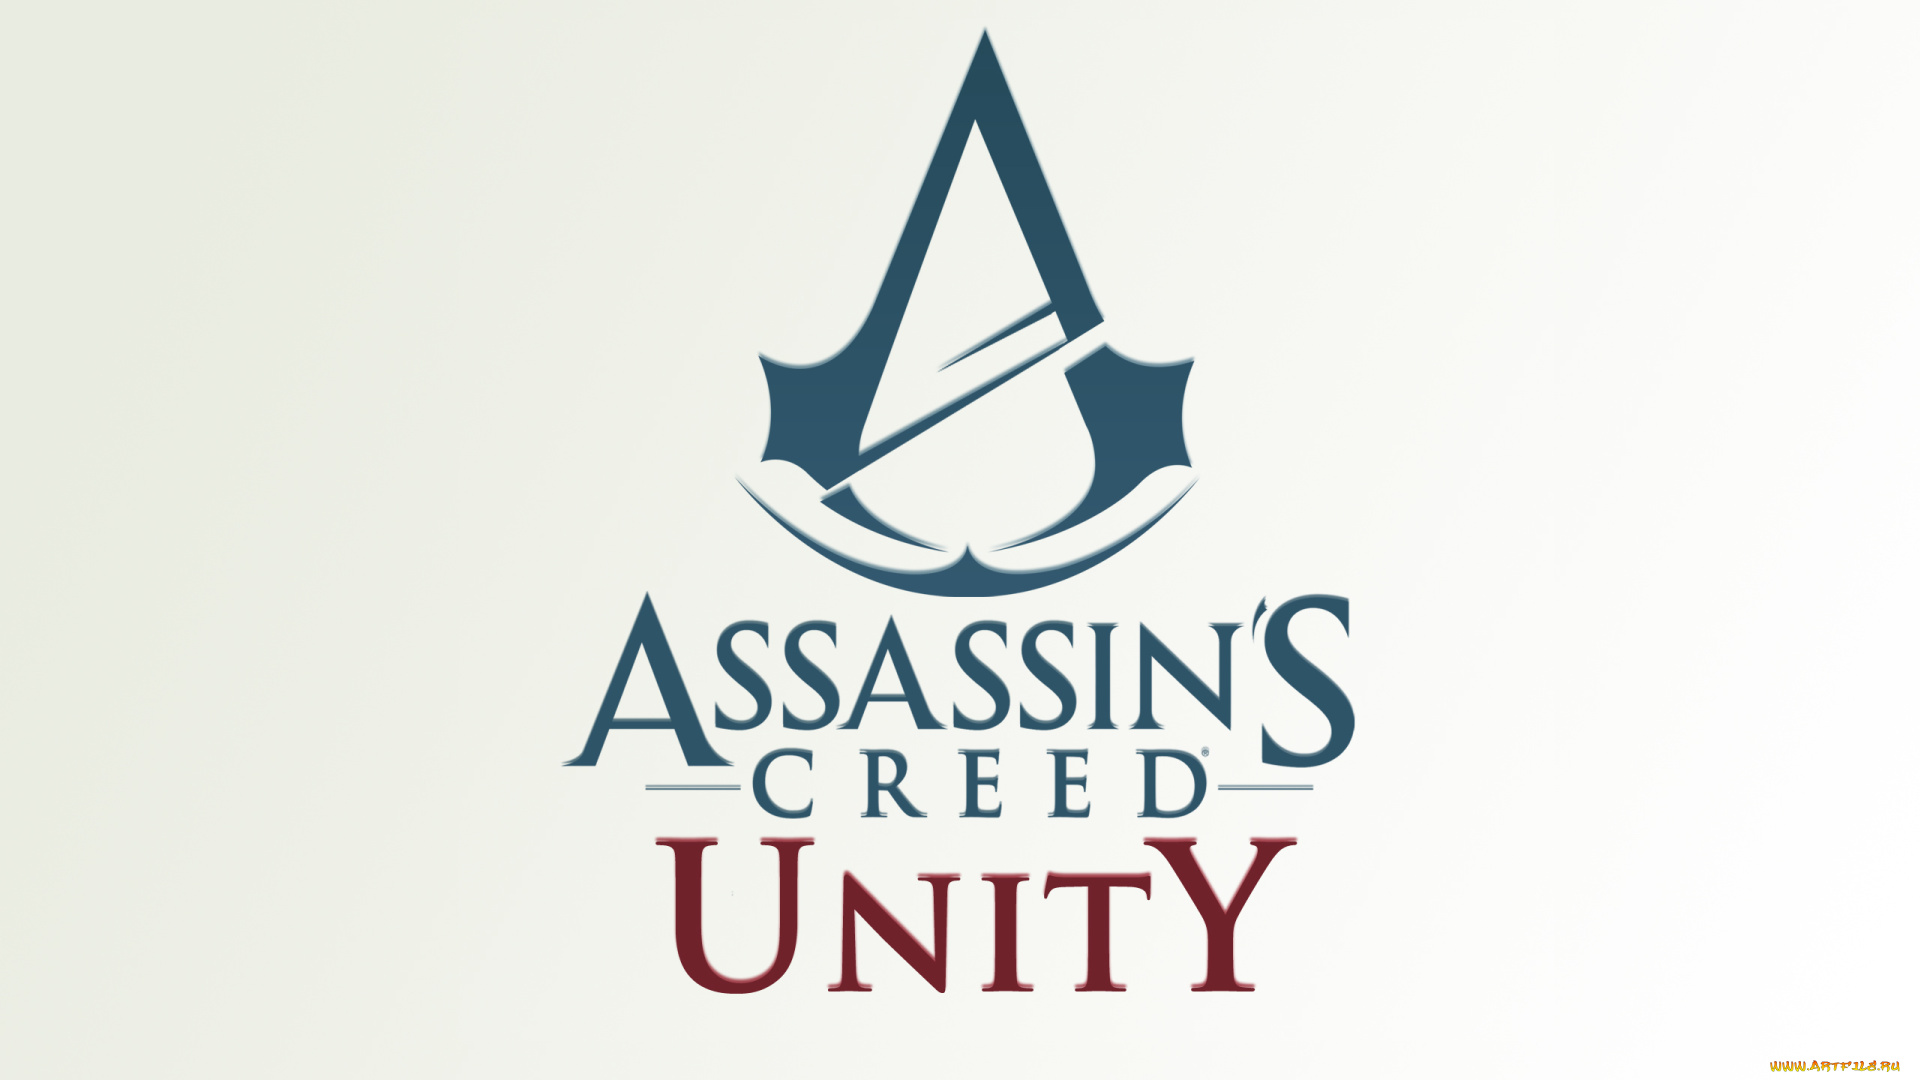 видео, игры, -, assassin`s, creed, unity, assassins, логотип, экшен, игра, unity, creed